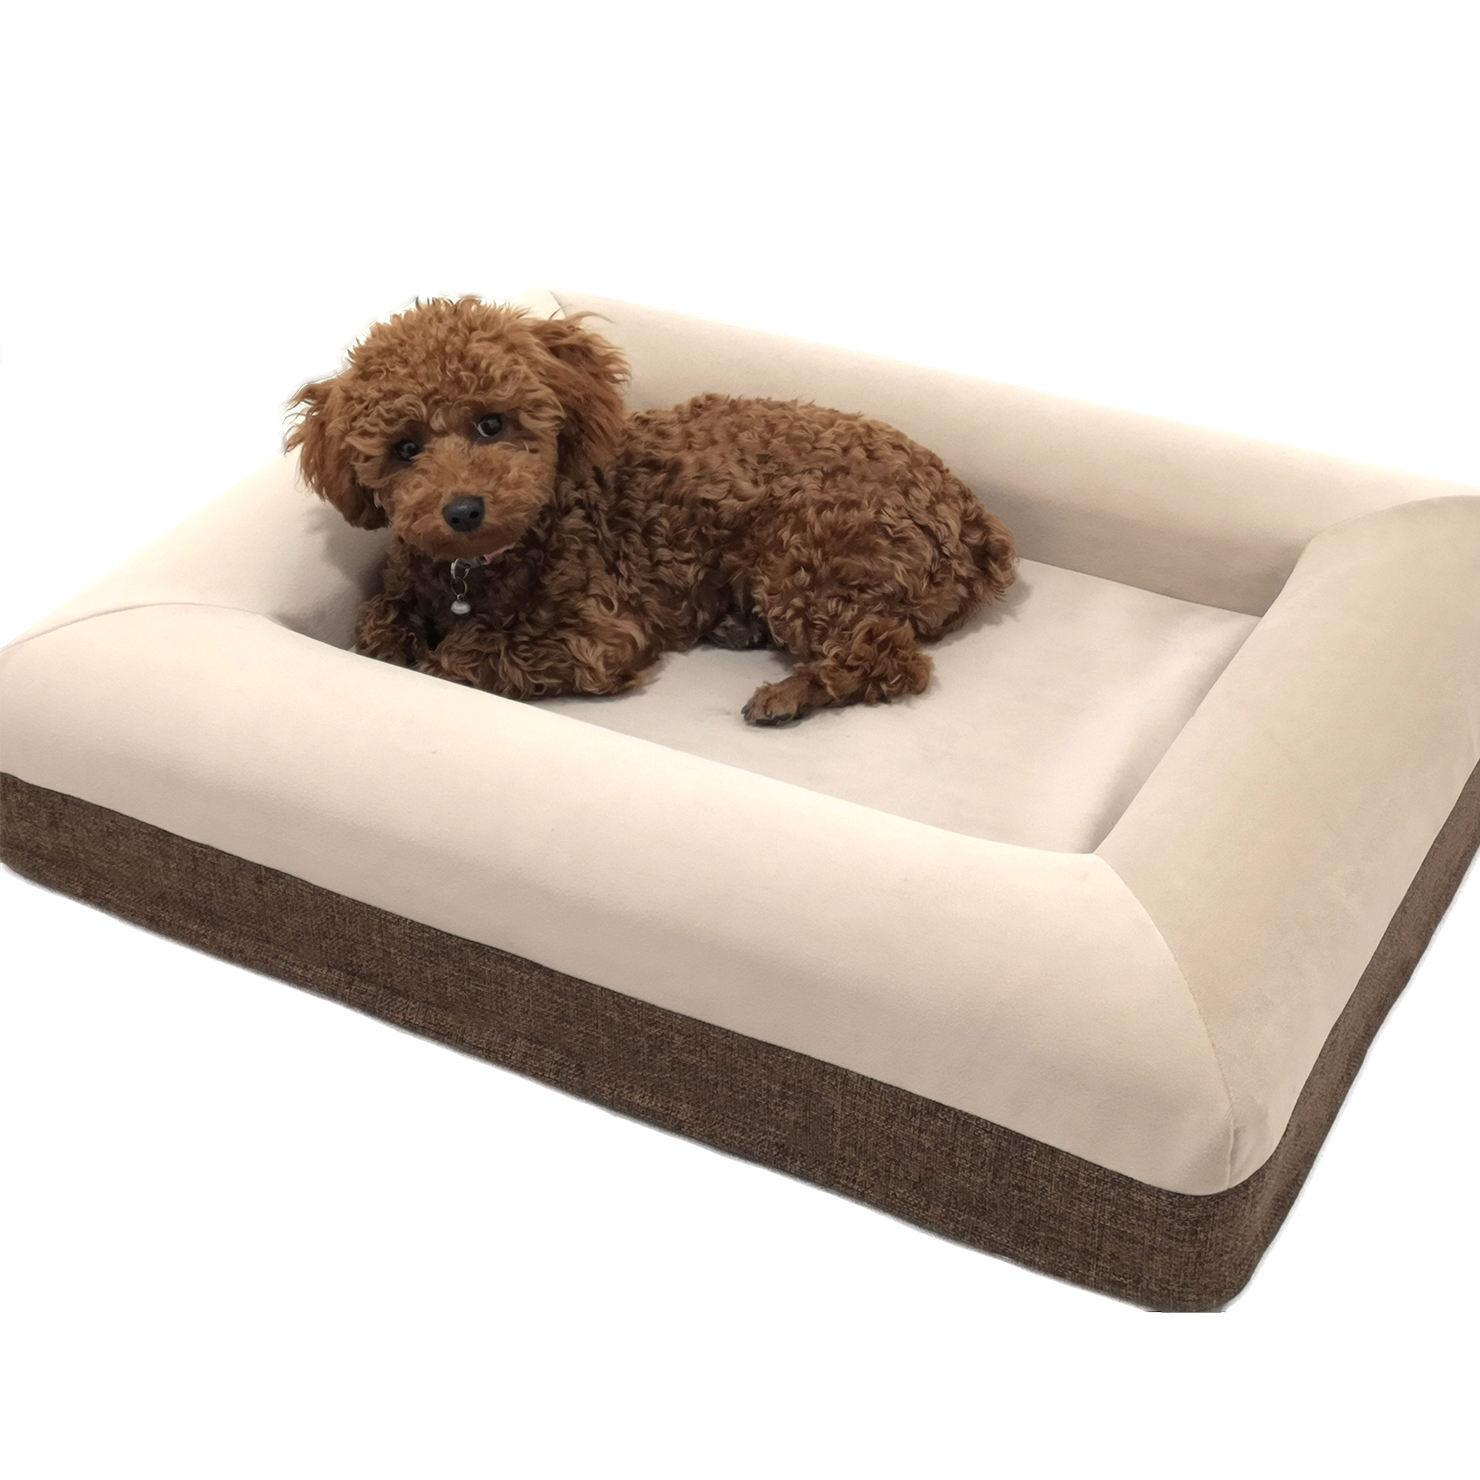 Extra Large Dog Bed Giant Croc Shoe Shape Dog Bed Orthopedic Dog Bed Memory Foam